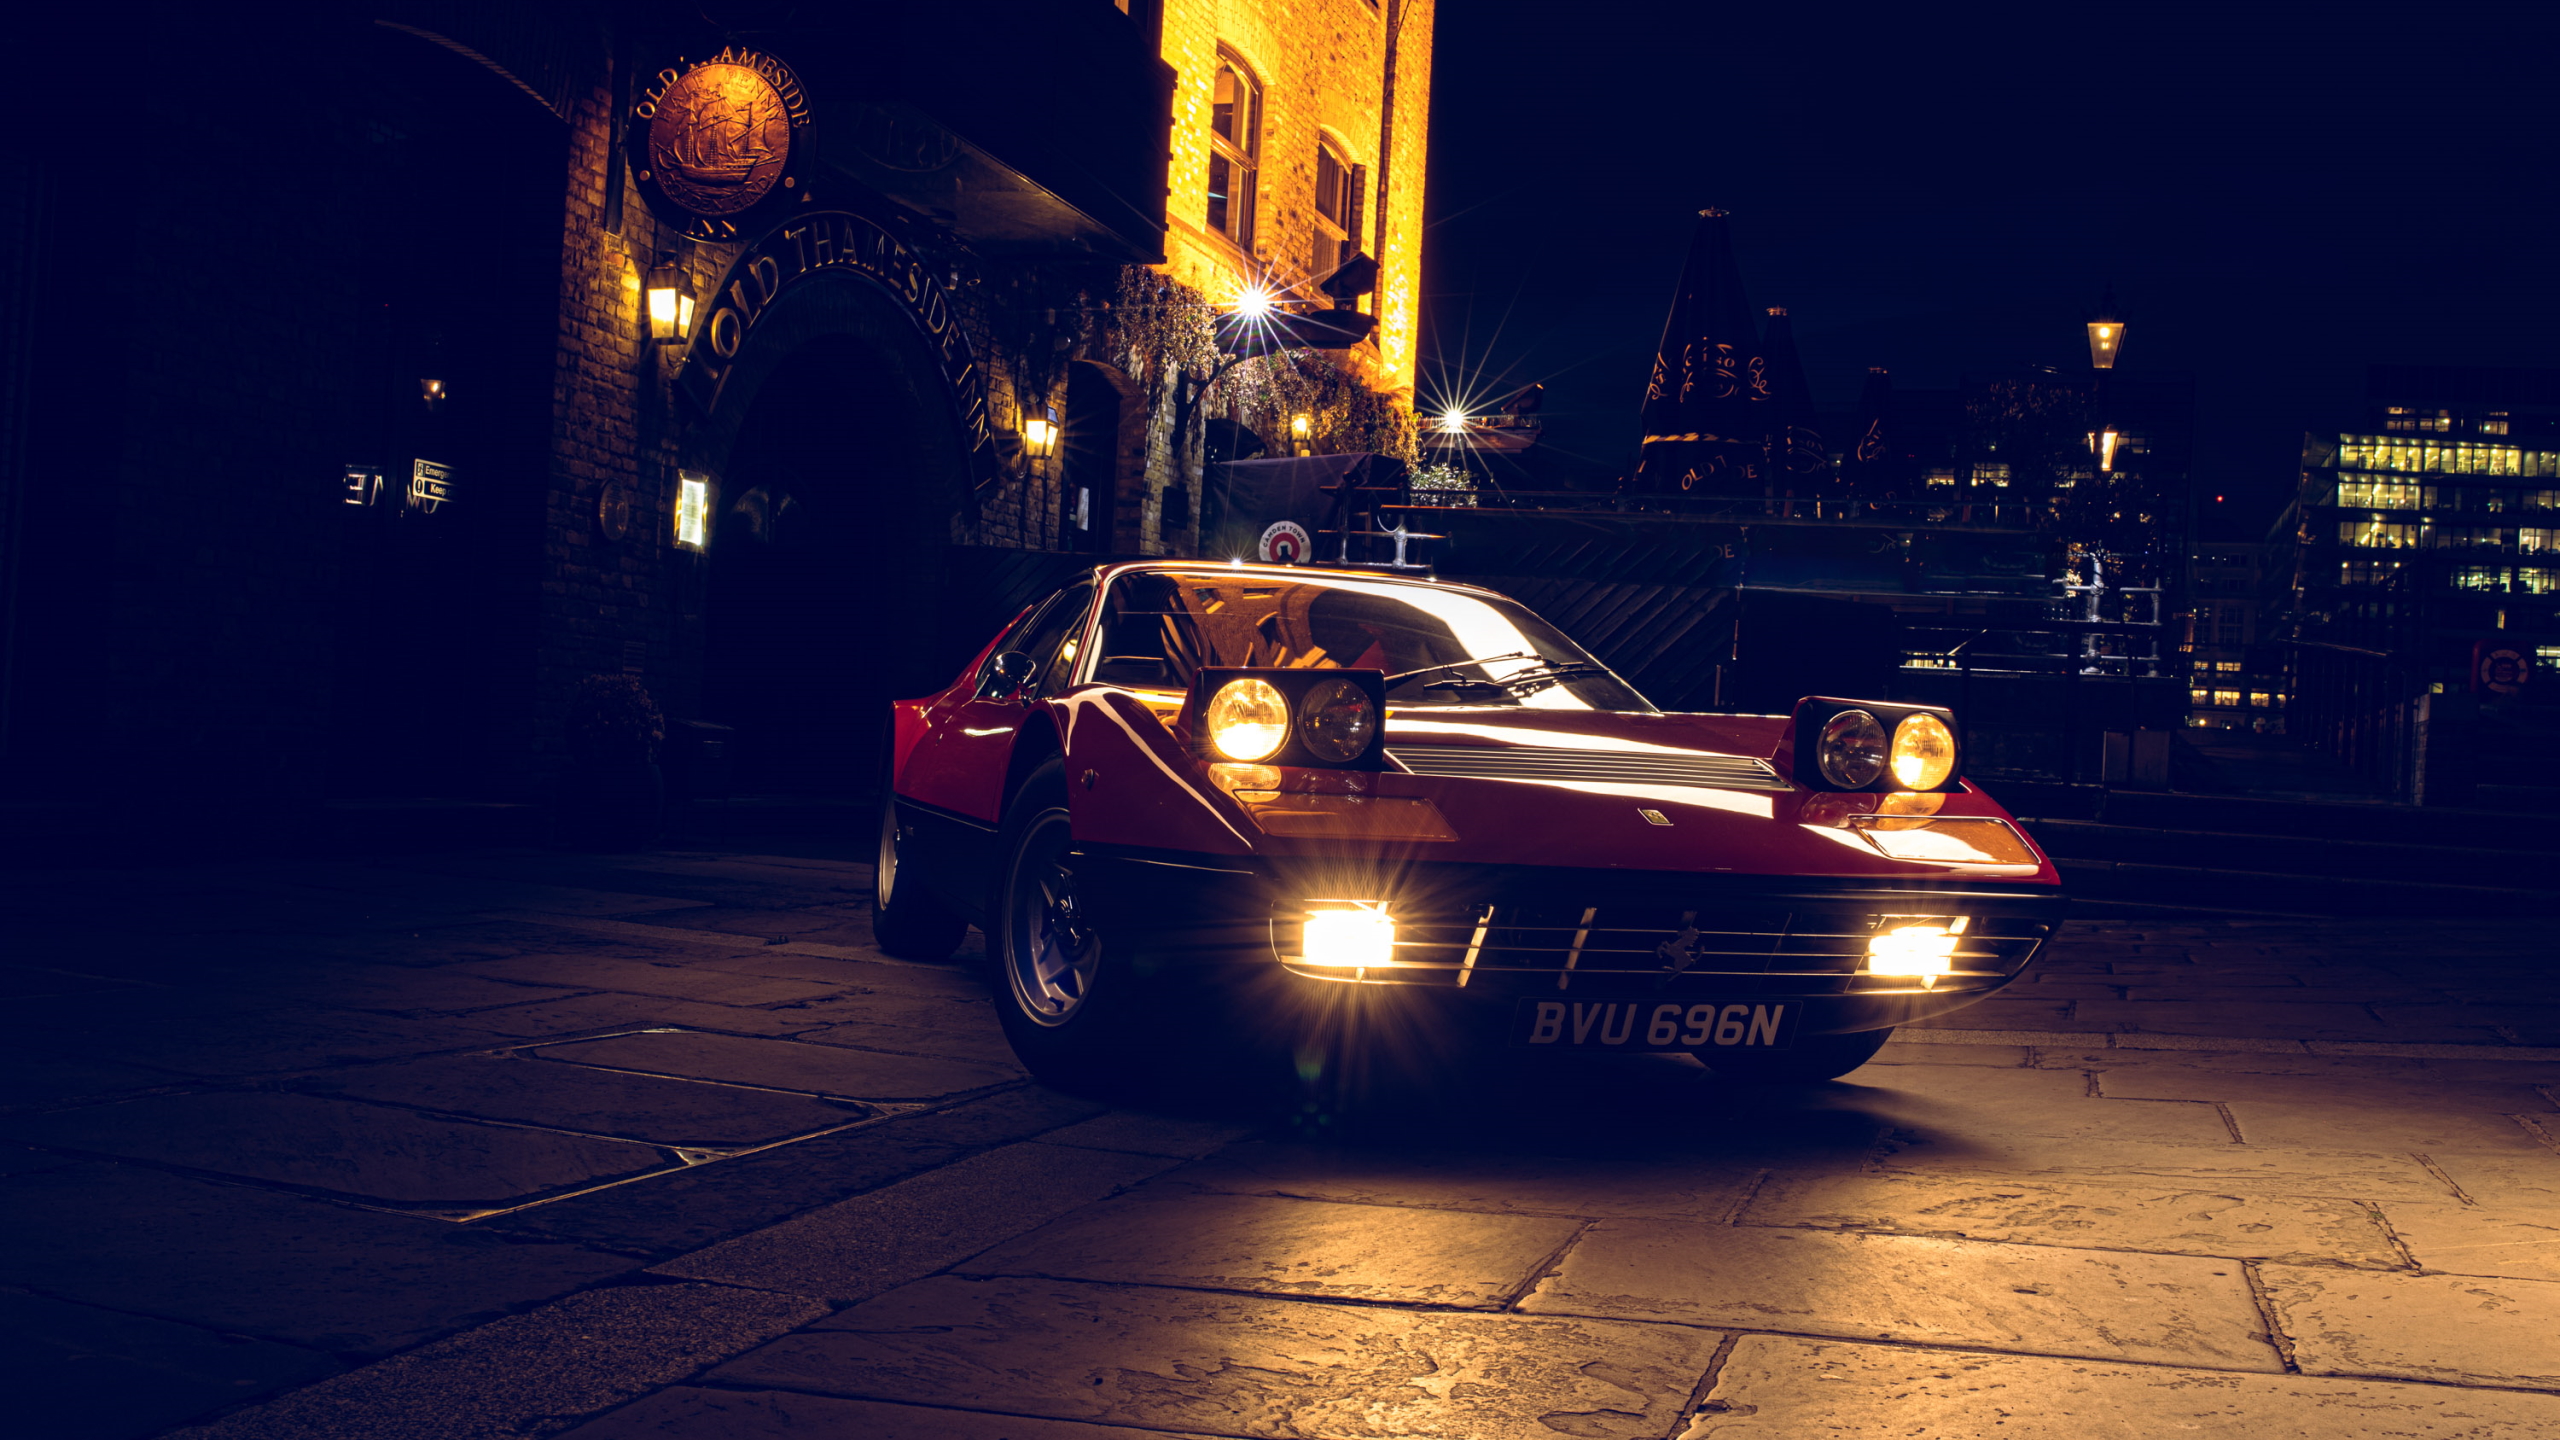 Ferrari Berlinetta Boxer Ferrari 365 GT 4 BB Italian Cars Red Cars Night London Pop Up Headlights Ca 2560x1440